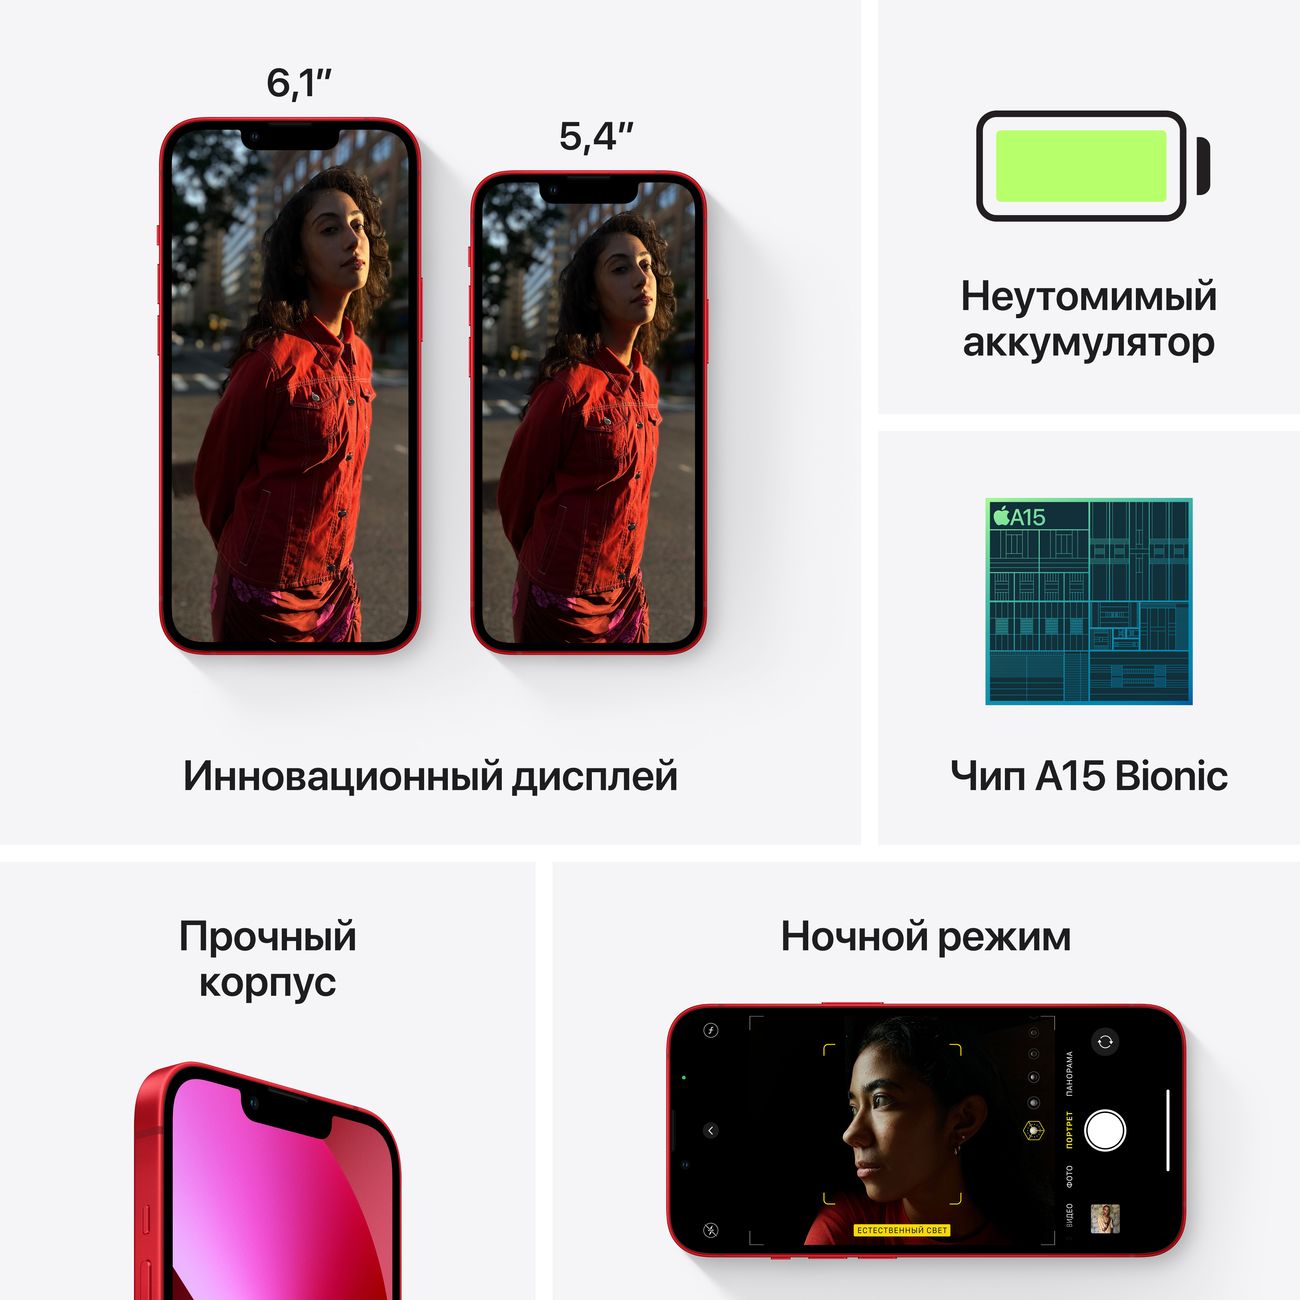 Купить смартфон apple iphone 13 128gb midnight Apple iPhone 13 в официальном магазине Apple, Samsung, Xiaomi. iPixel.ru Купить, заказ, кредит, рассрочка, отзывы,  характеристики, цена,  фотографии, в подарок.